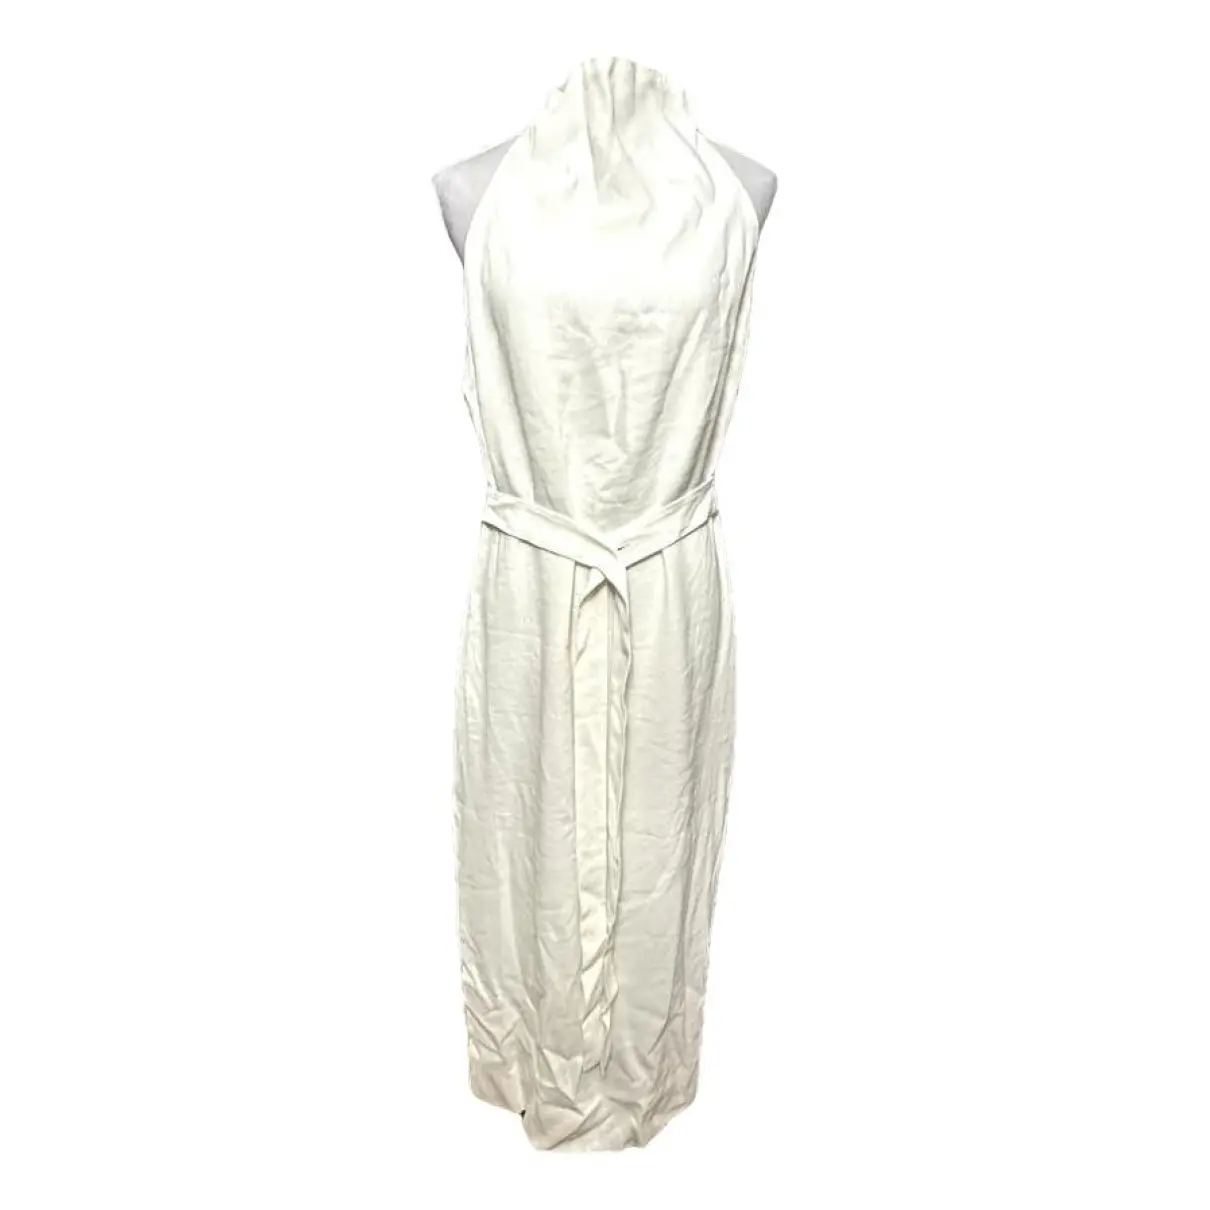 Linen mid-length dress